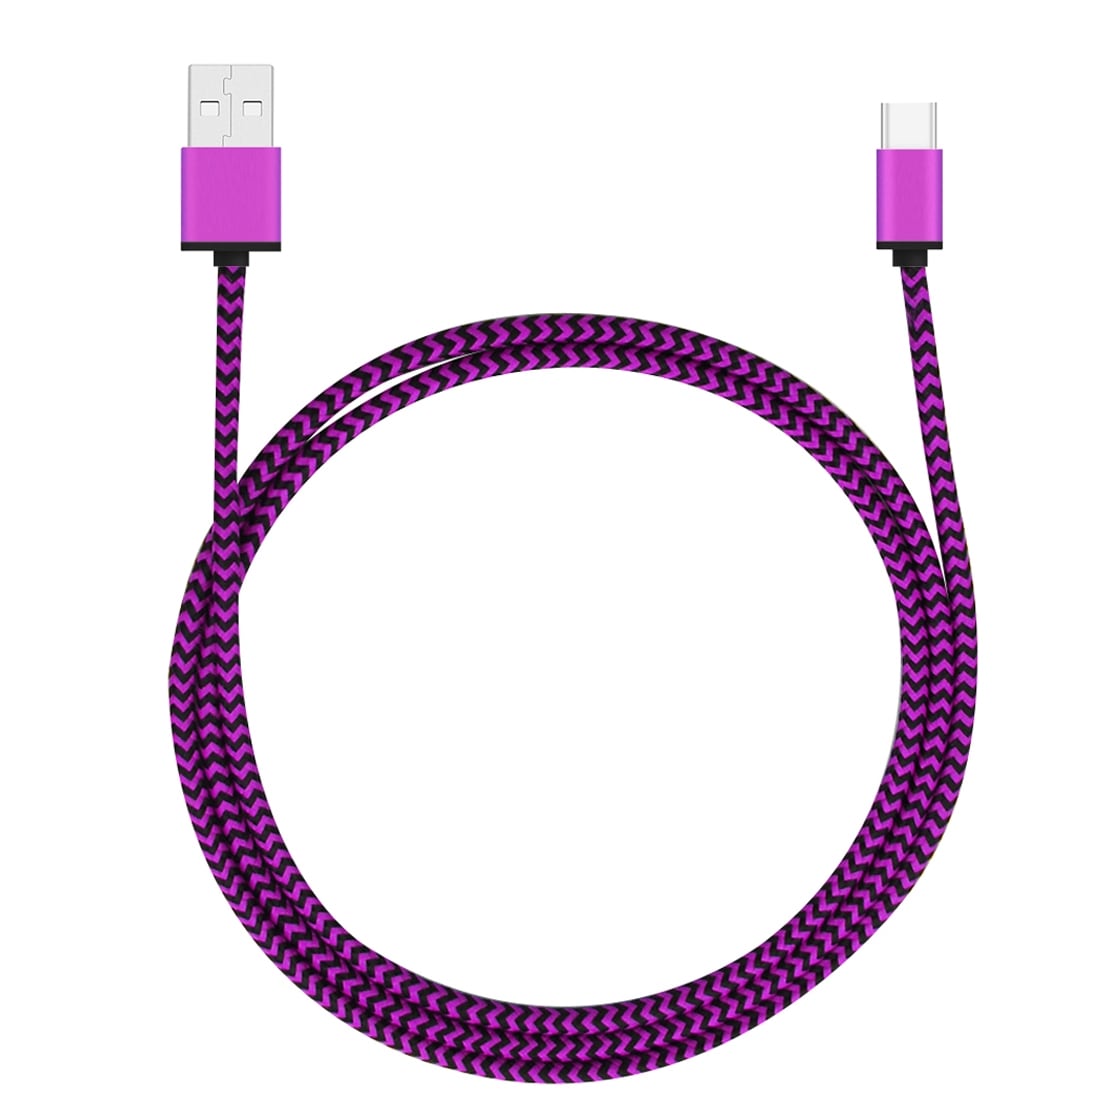 Robust stoffkledd Usbkabel Usbkabel USB typ C med metallhode - Storpakk 5stk i ulike farger